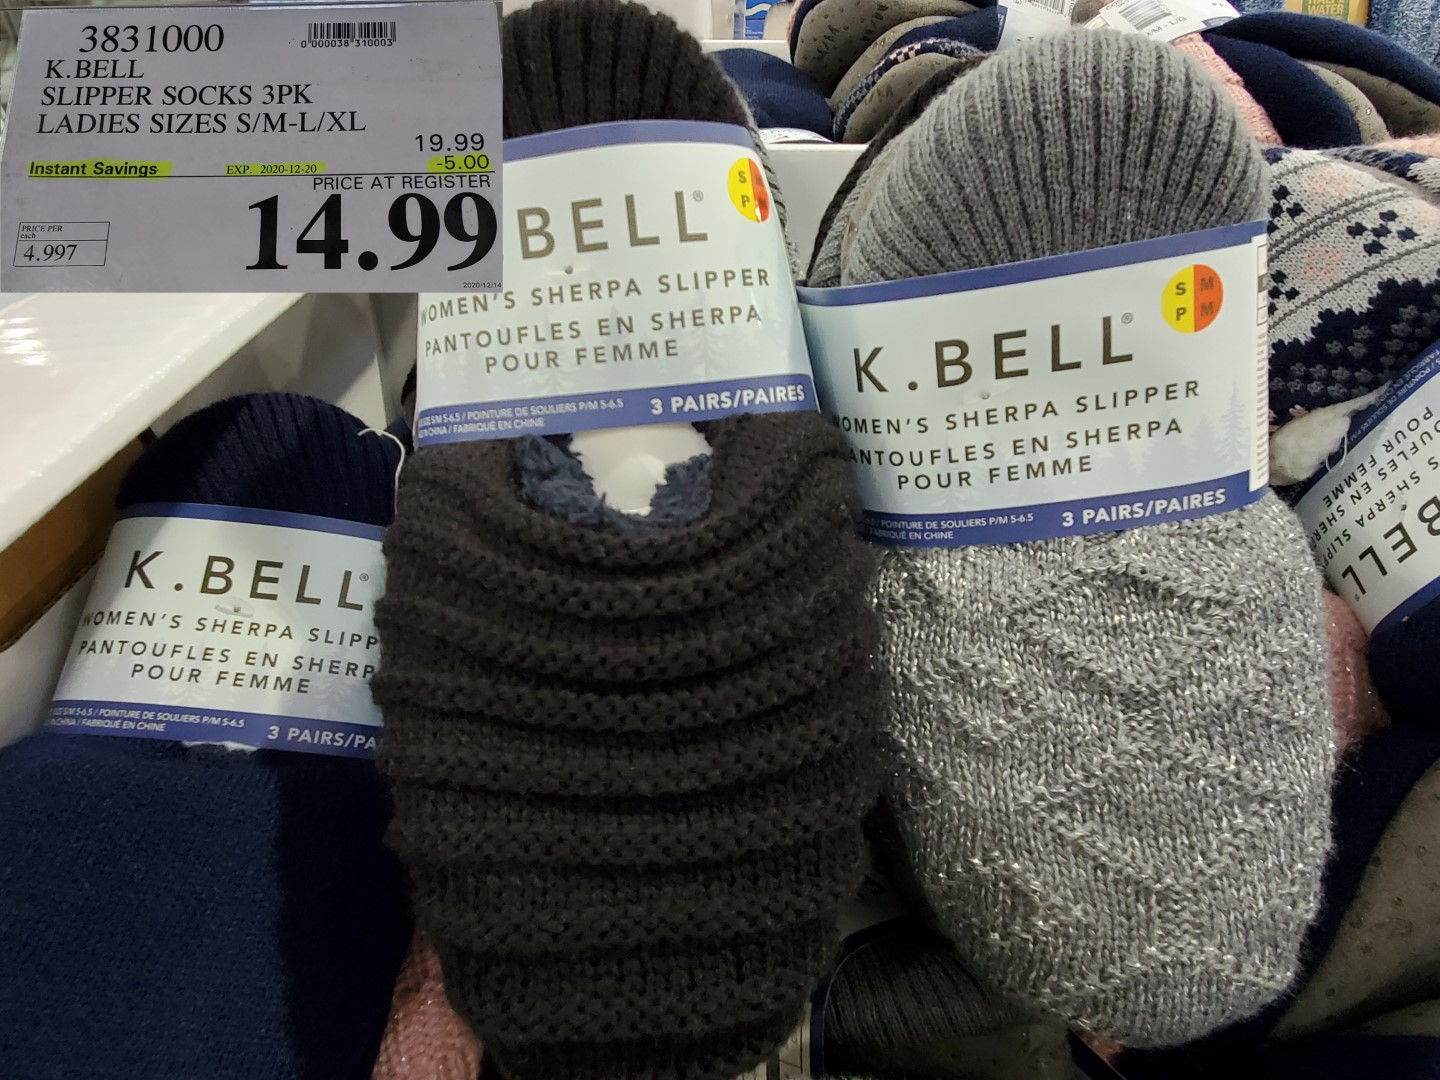 K.Bell slipper